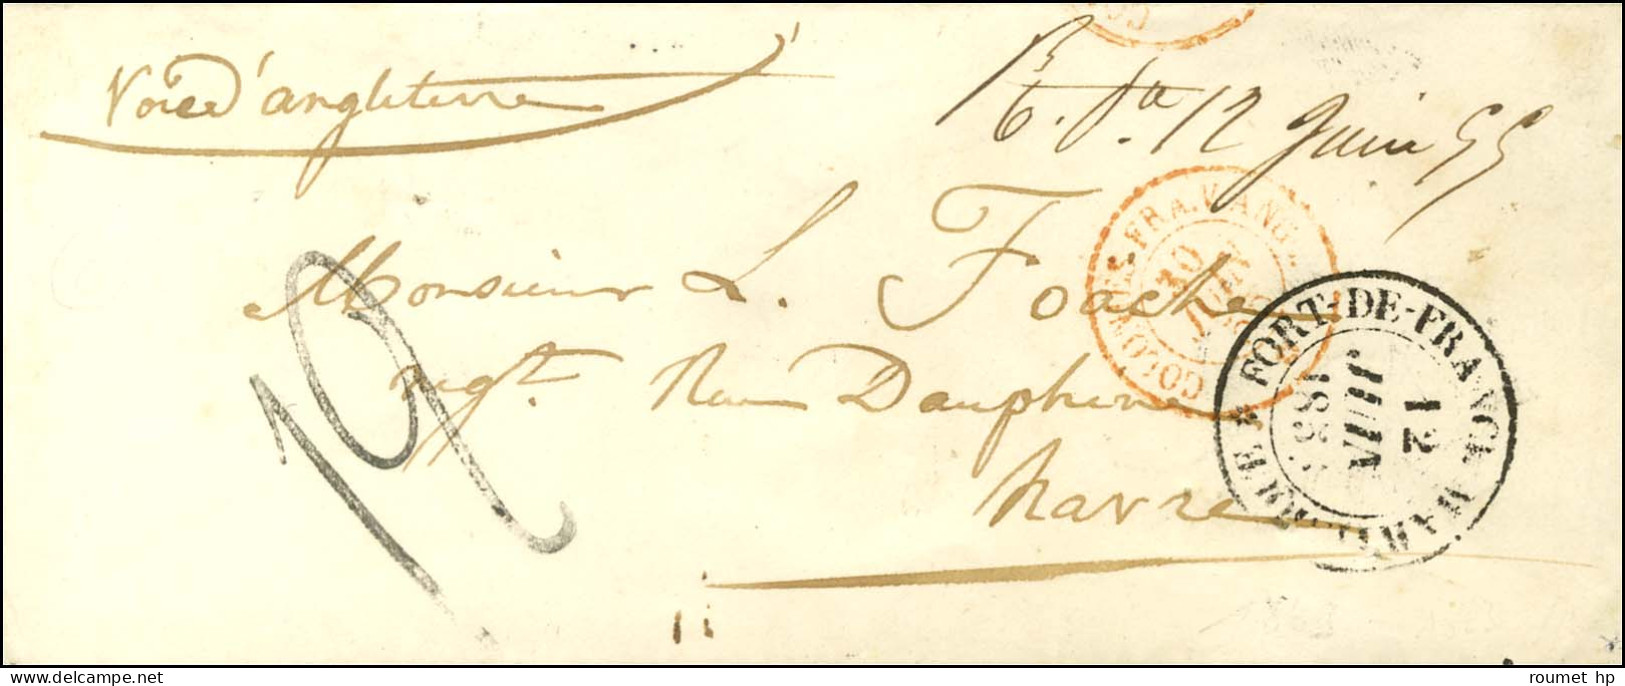 Marque Manuscrite '' R.Pe 12 Juin 55 '' (Rivière Pilote) (J N°1) Sur Enveloppe Pour Le Havre. Au Recto, Càd FORT DE FRAN - Poste Maritime